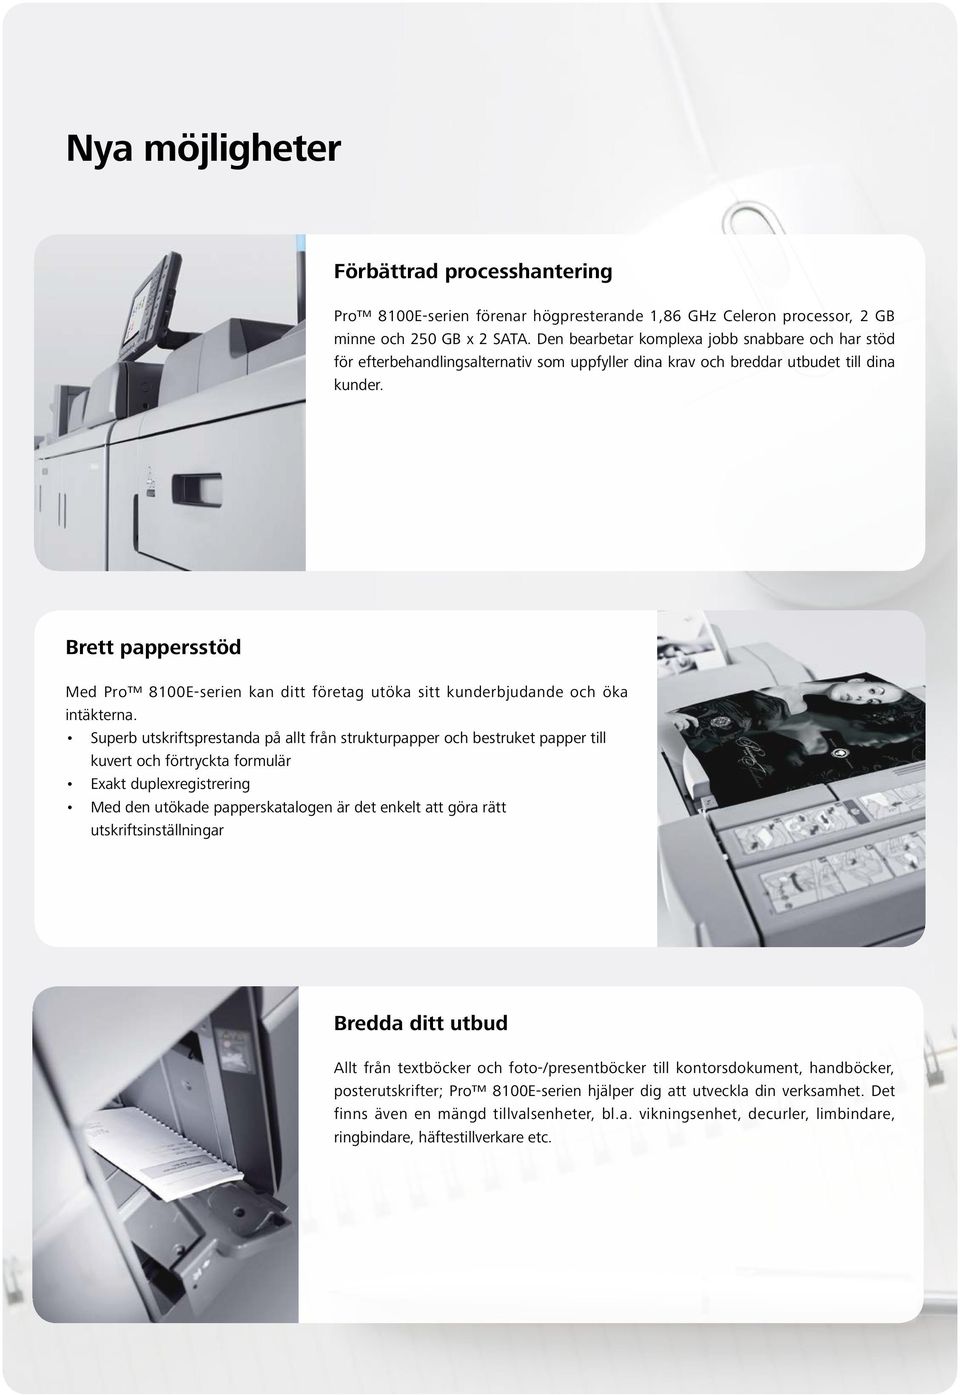 Brett pappersstöd Med Pro 8100E-serien kan ditt företag utöka sitt kunderbjudande och öka intäkterna.